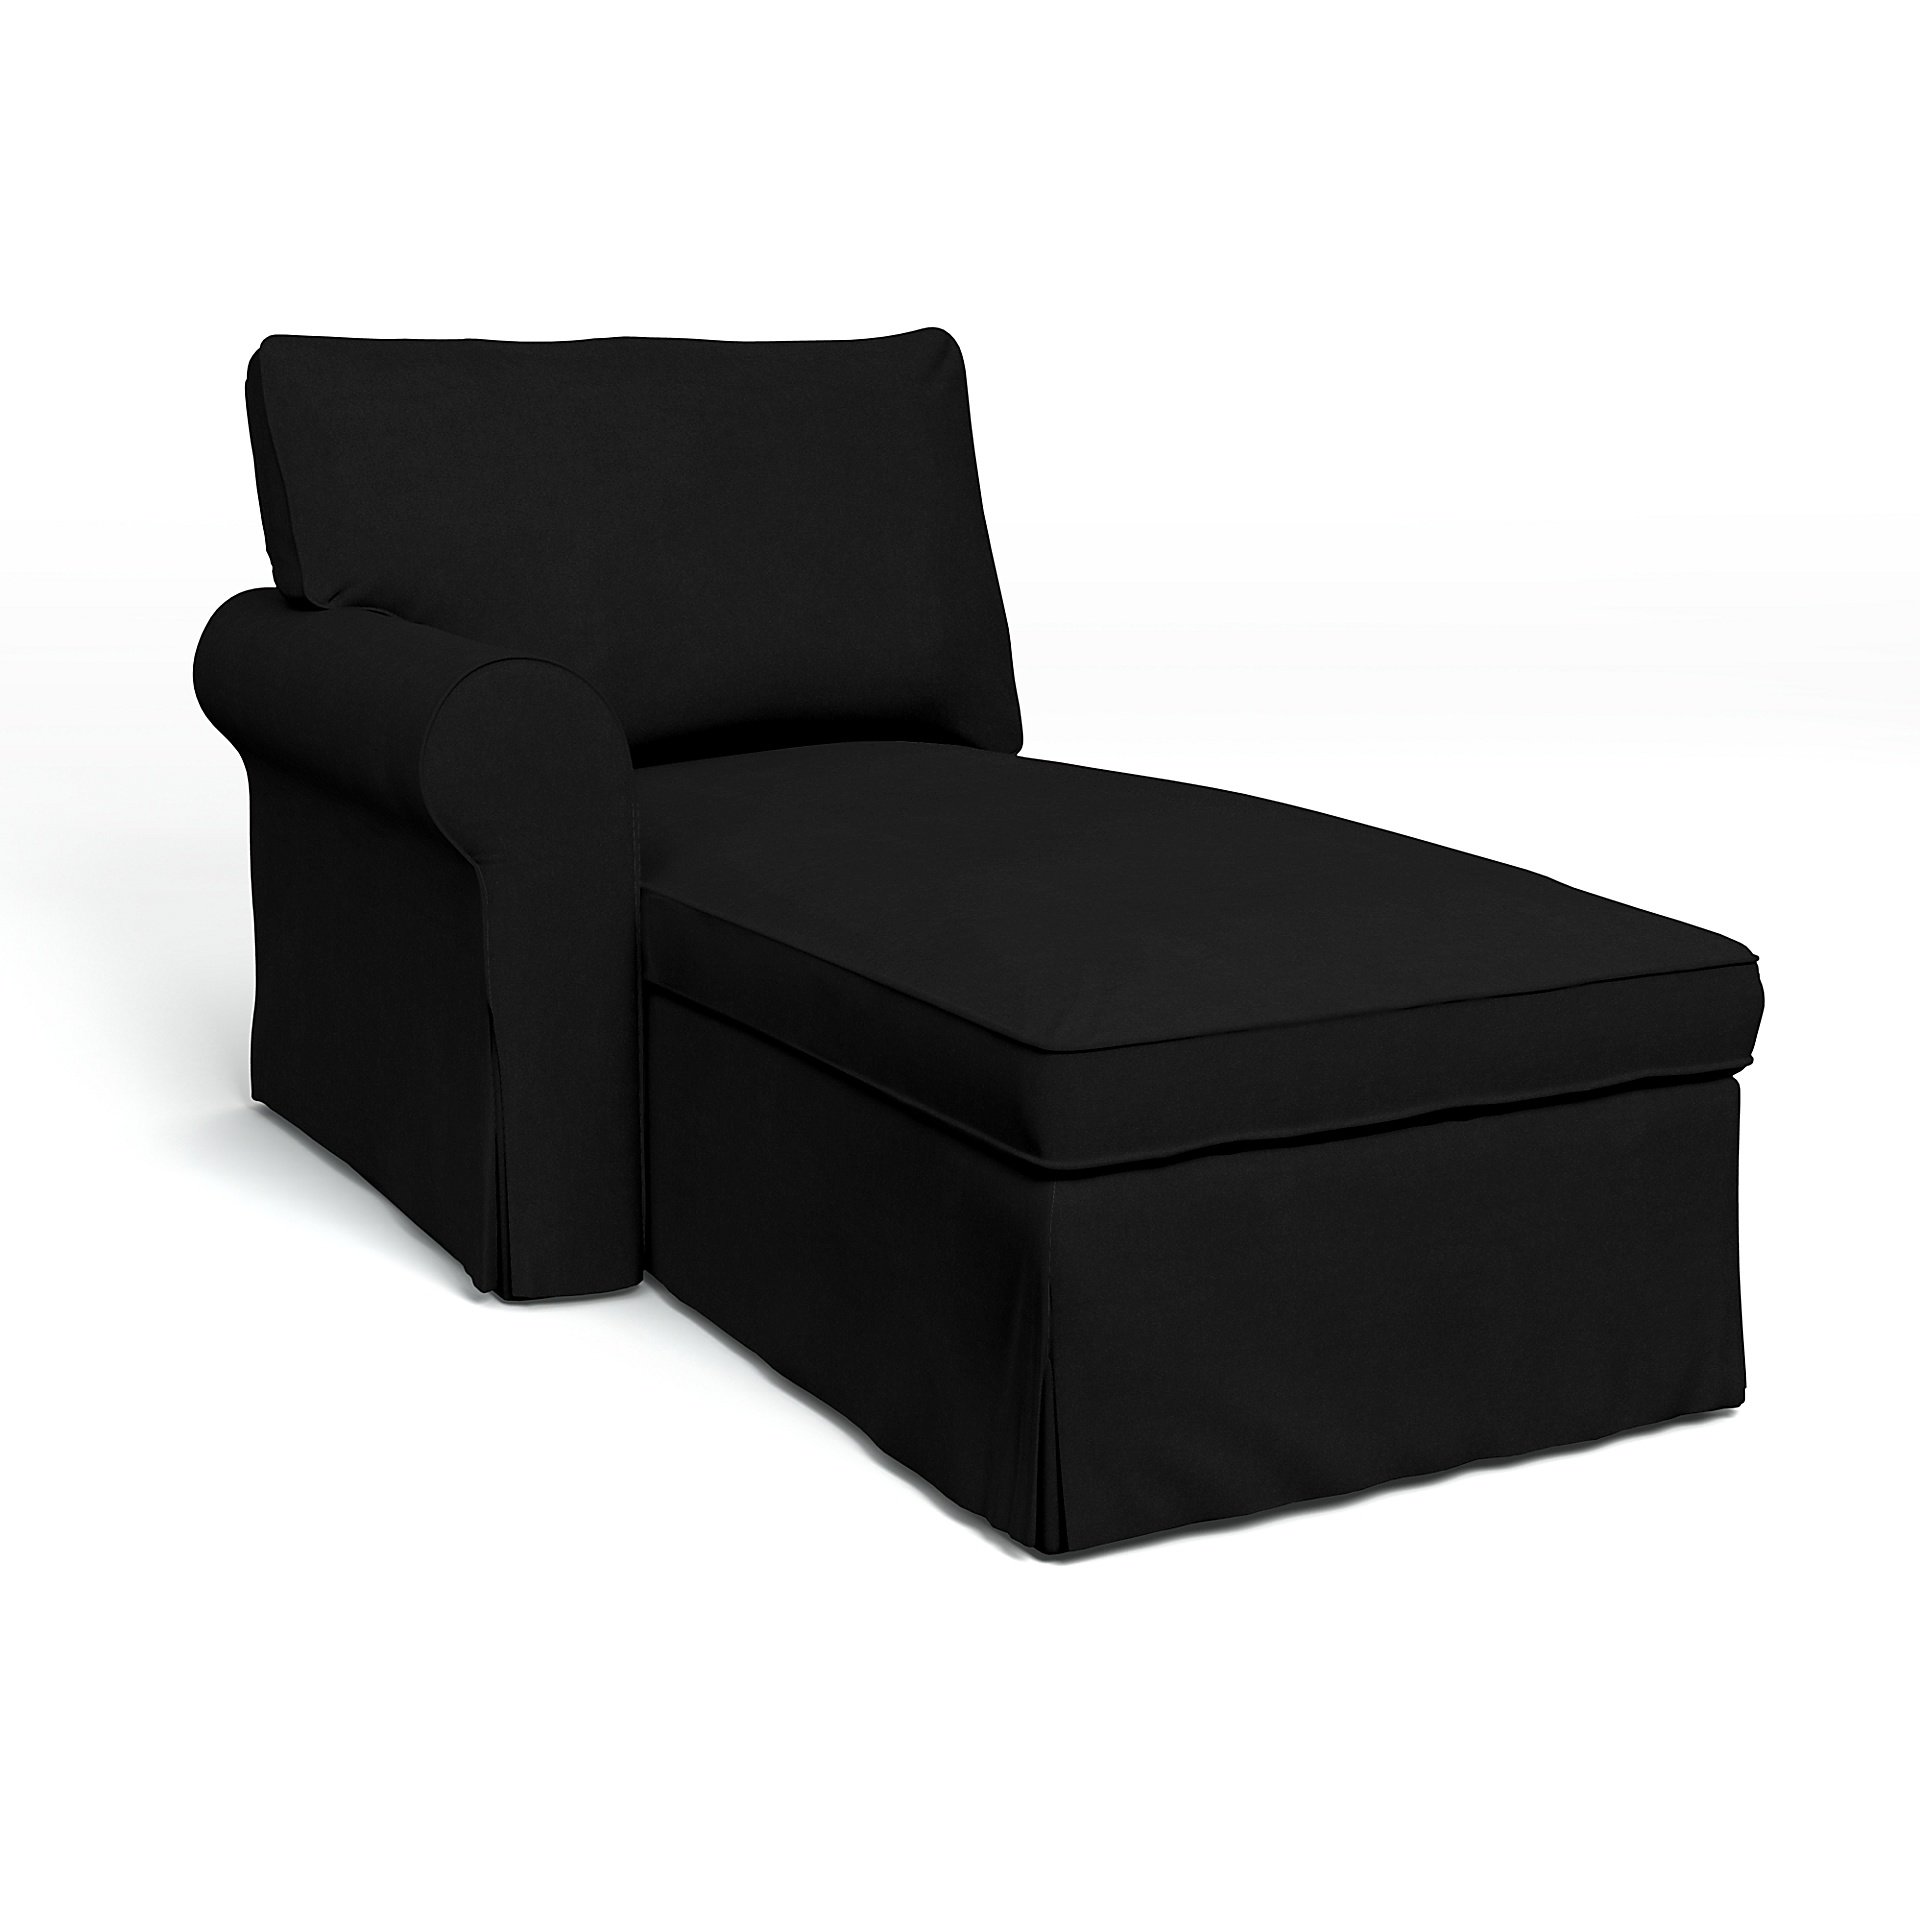 IKEA - Ektorp Chaise with Left Armrest Cover, Black, Velvet - Bemz